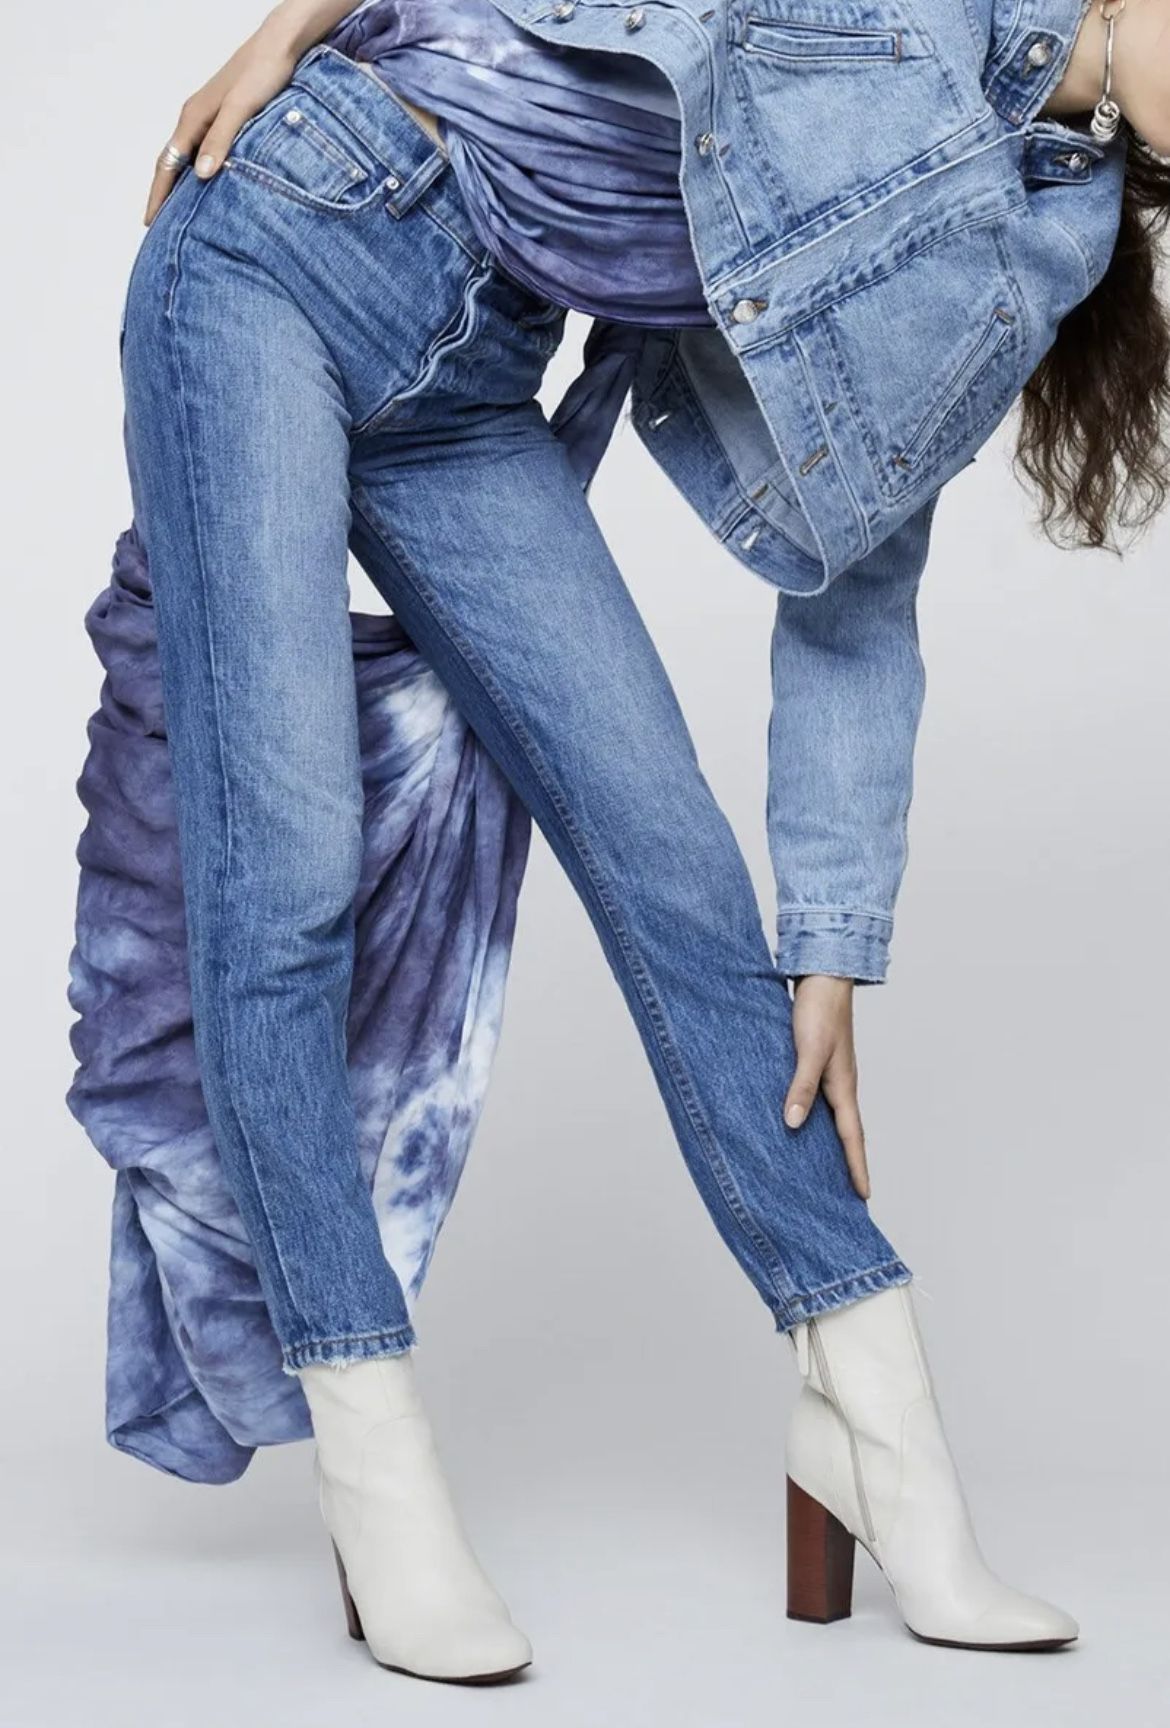 Premium Derek Lam Jeans Retail 275-375$